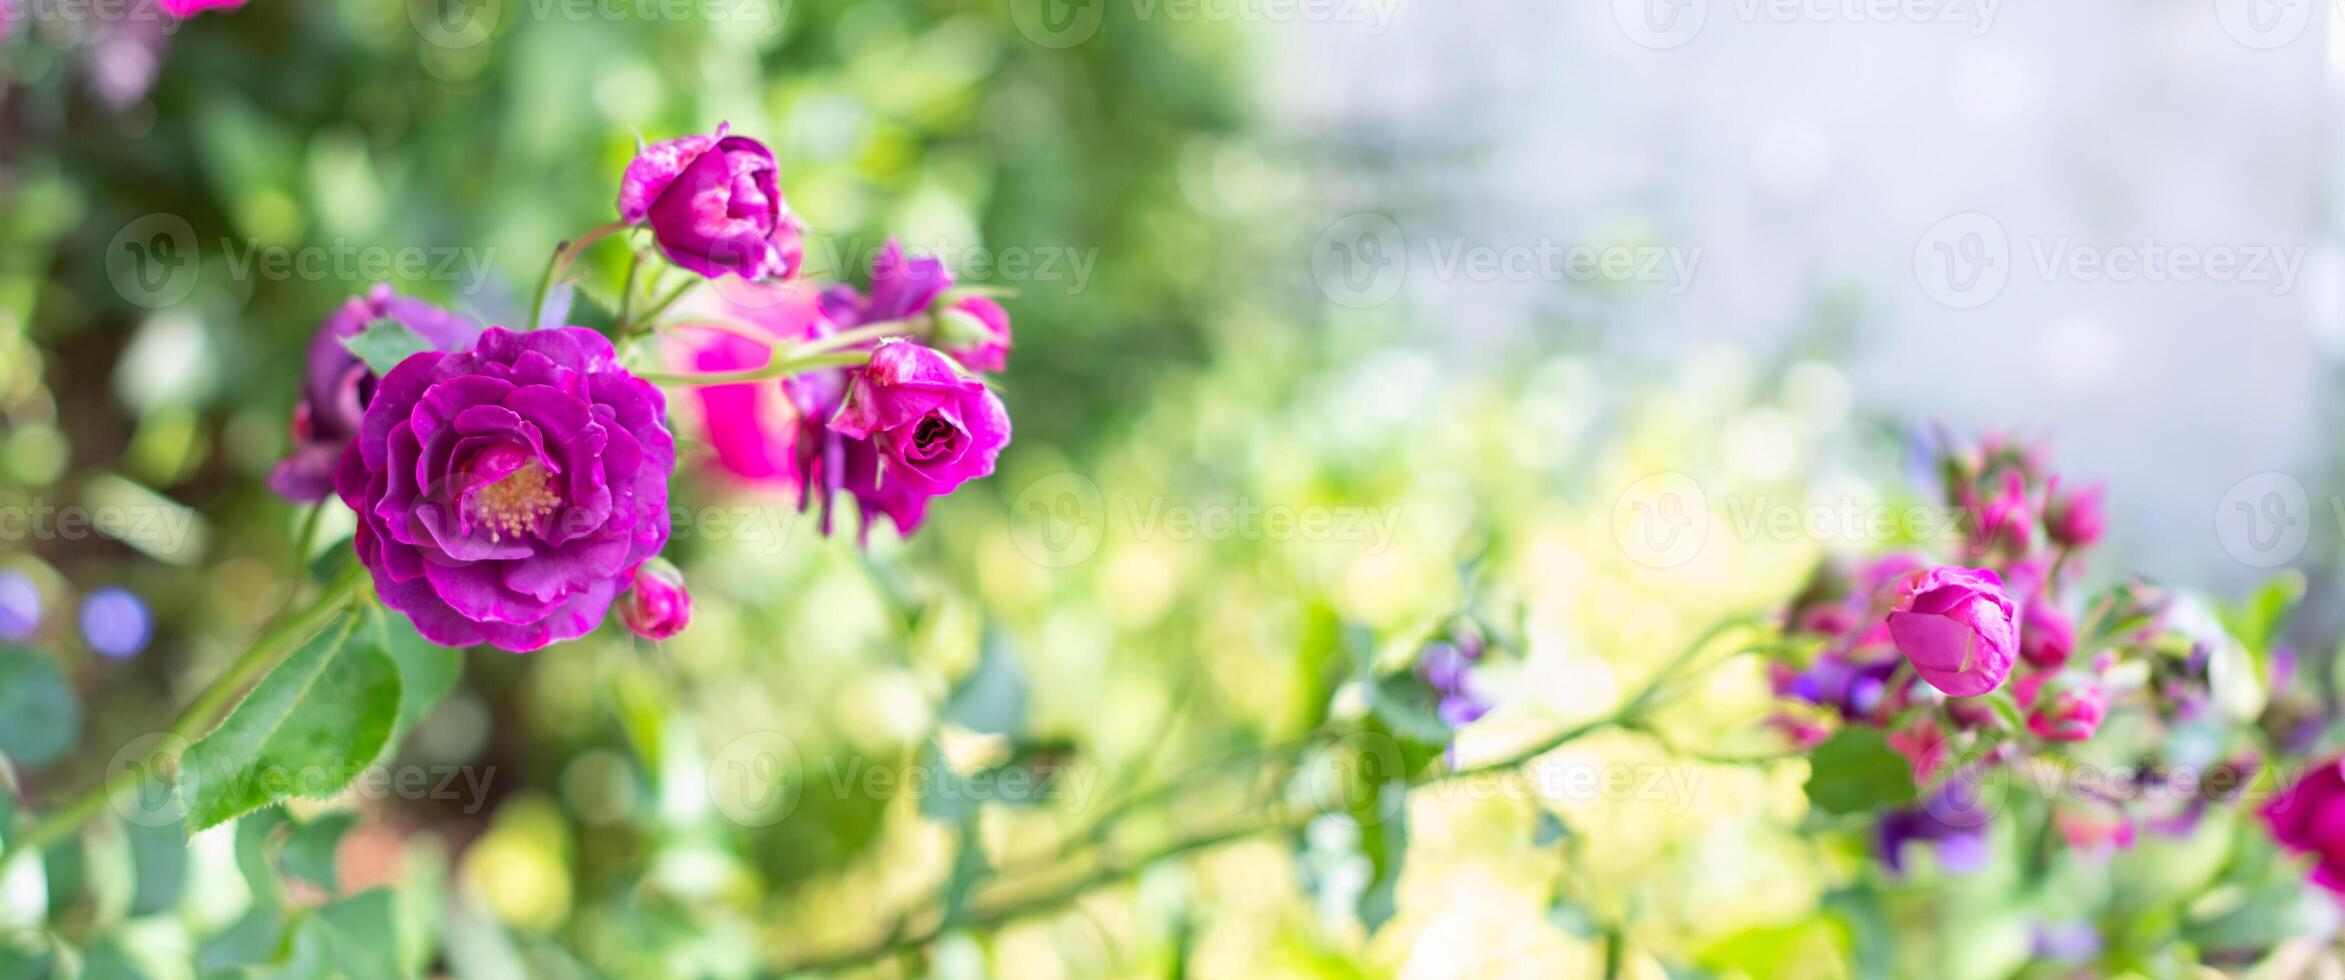 lila violett gemischt Farbe floribunda Rose Burgund Eis Blumen im das Garten, gegen verschwommen Grün Blätter foto